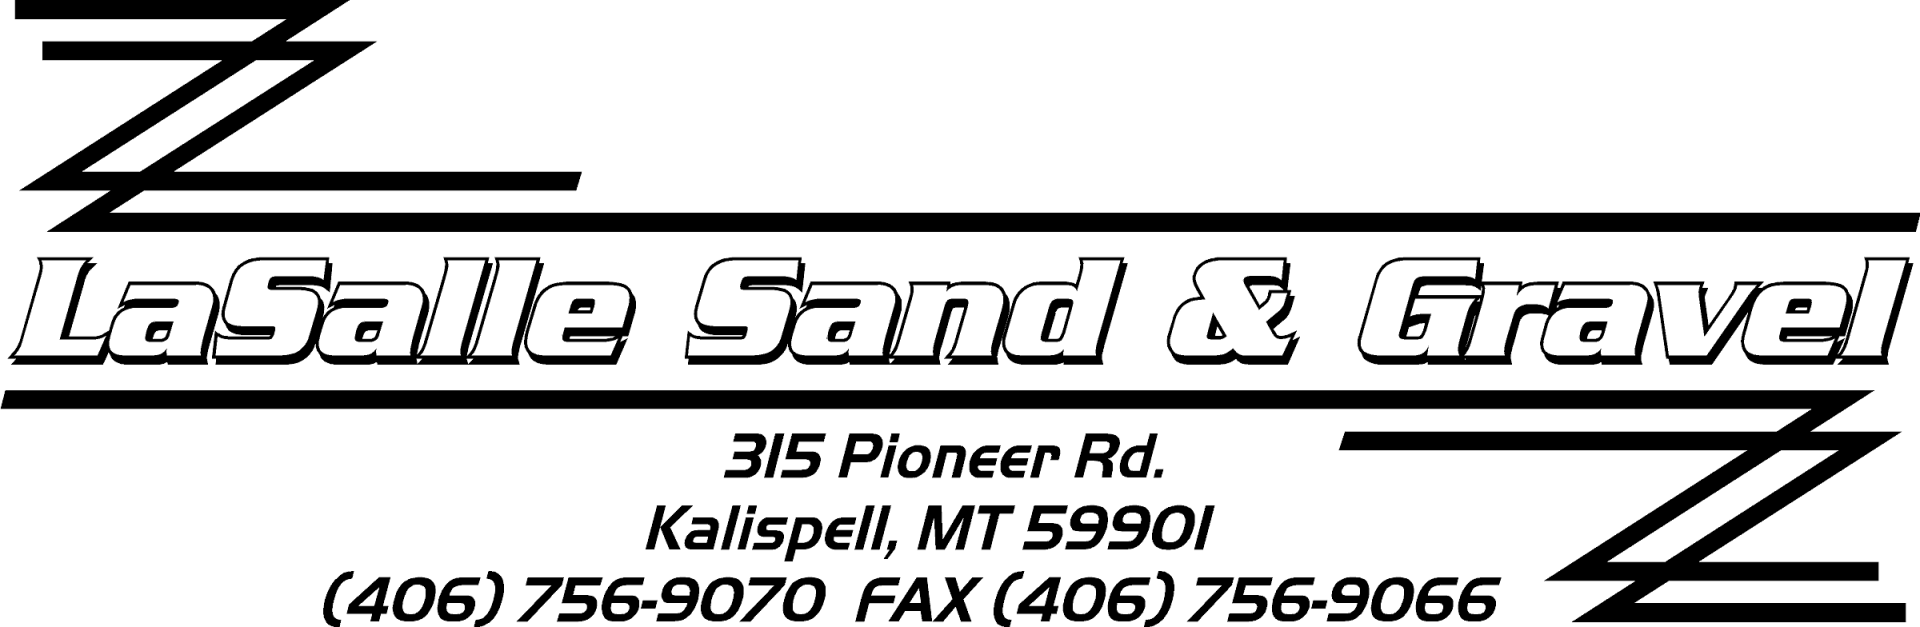 LaSalle Sand & Gravel logo